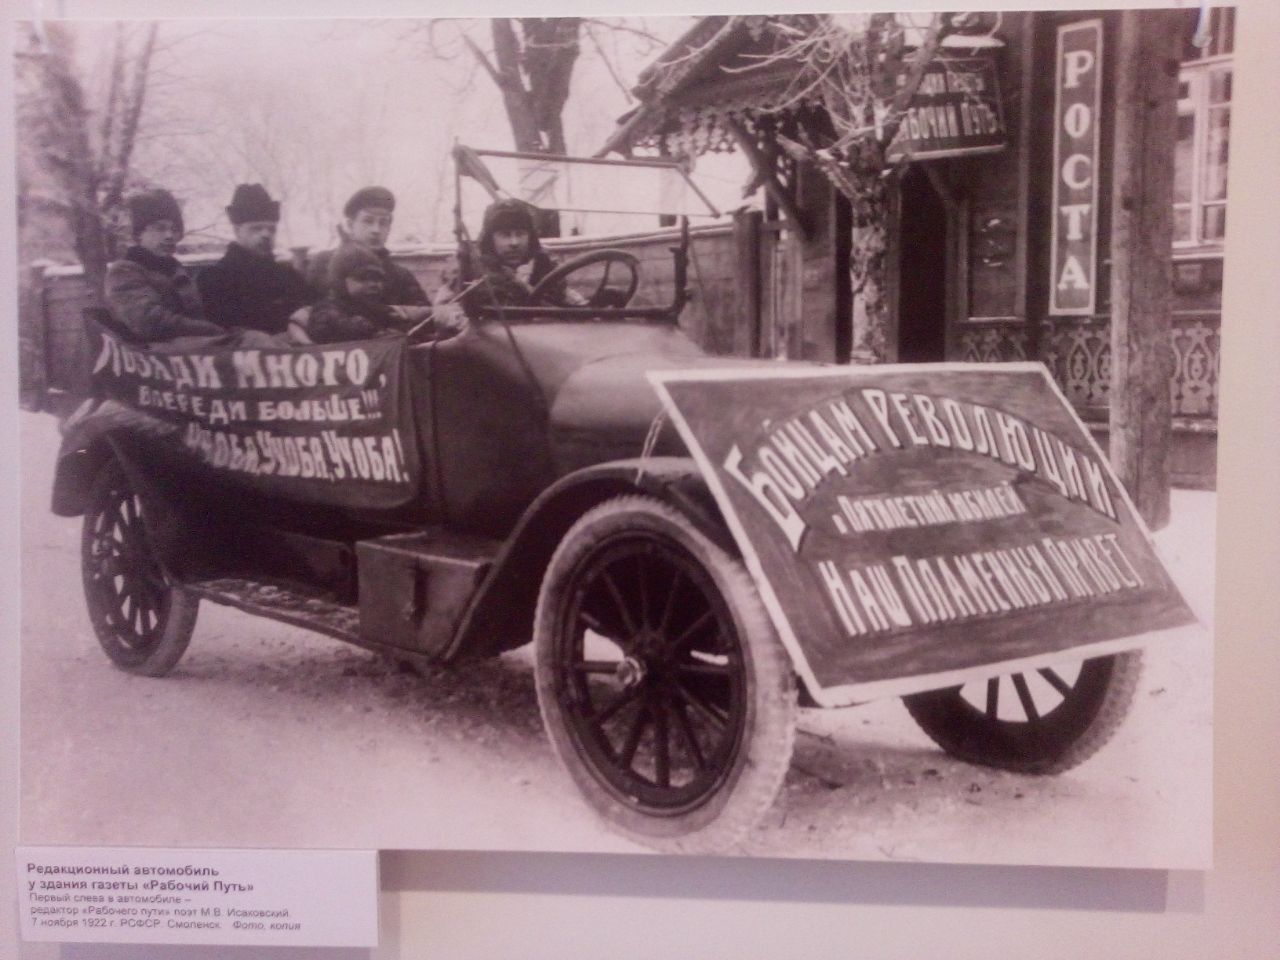 Редакционный автомобиль у здания газеты «Рабочий путь». 7 ноября 1922 г.